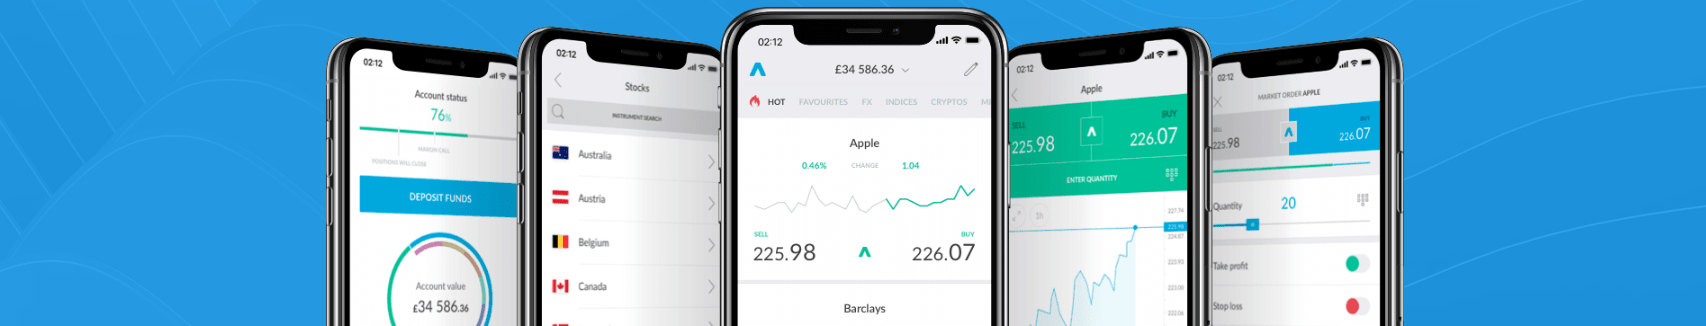 trading212-mobile-app